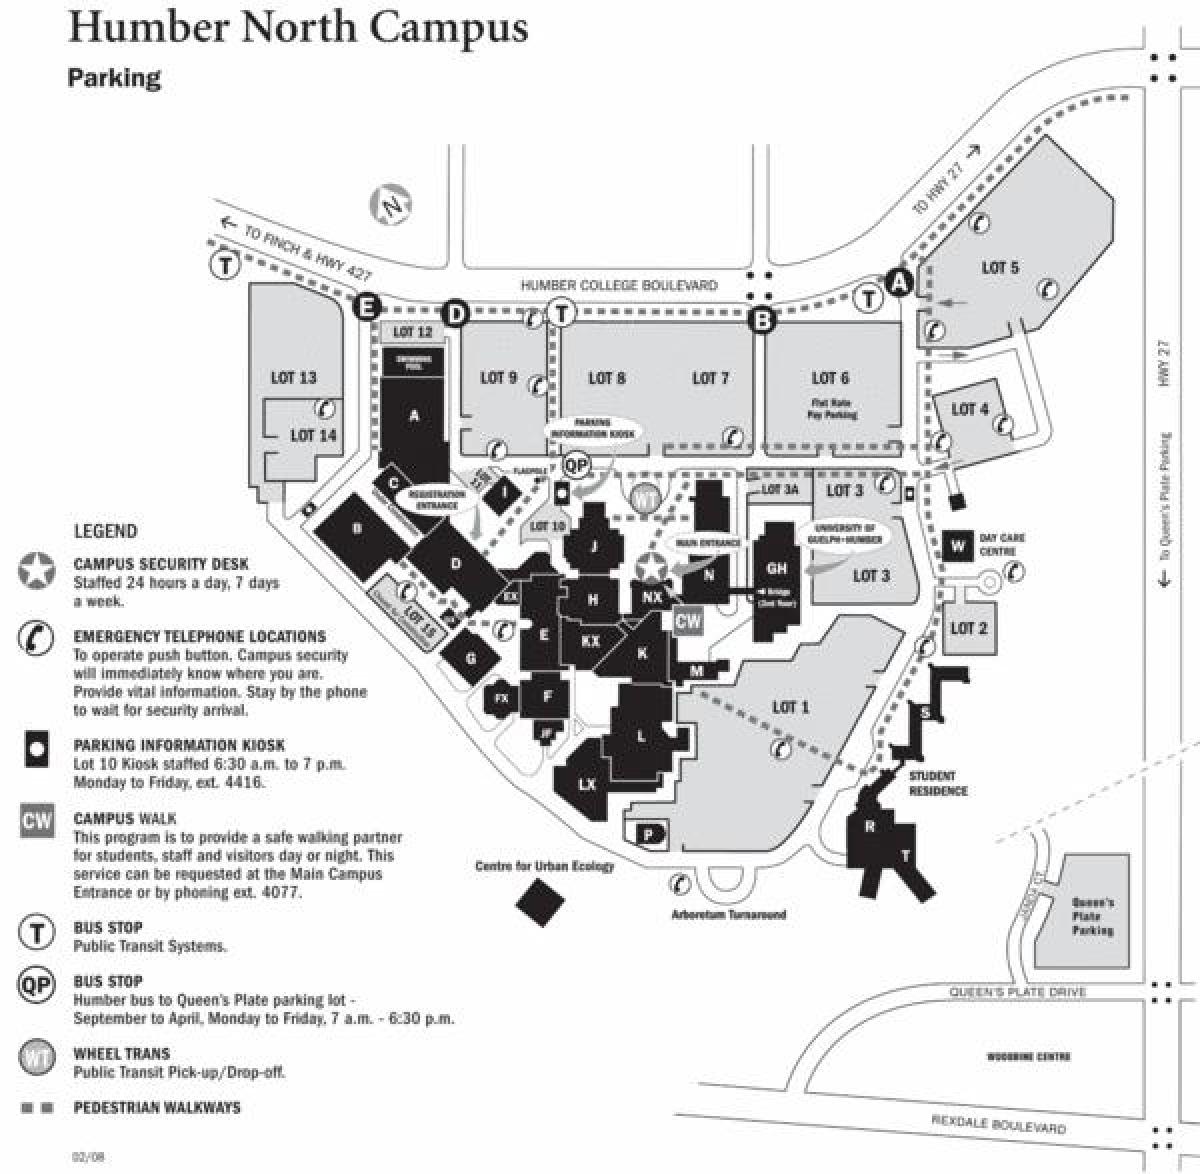 el humber college campus norte mapa